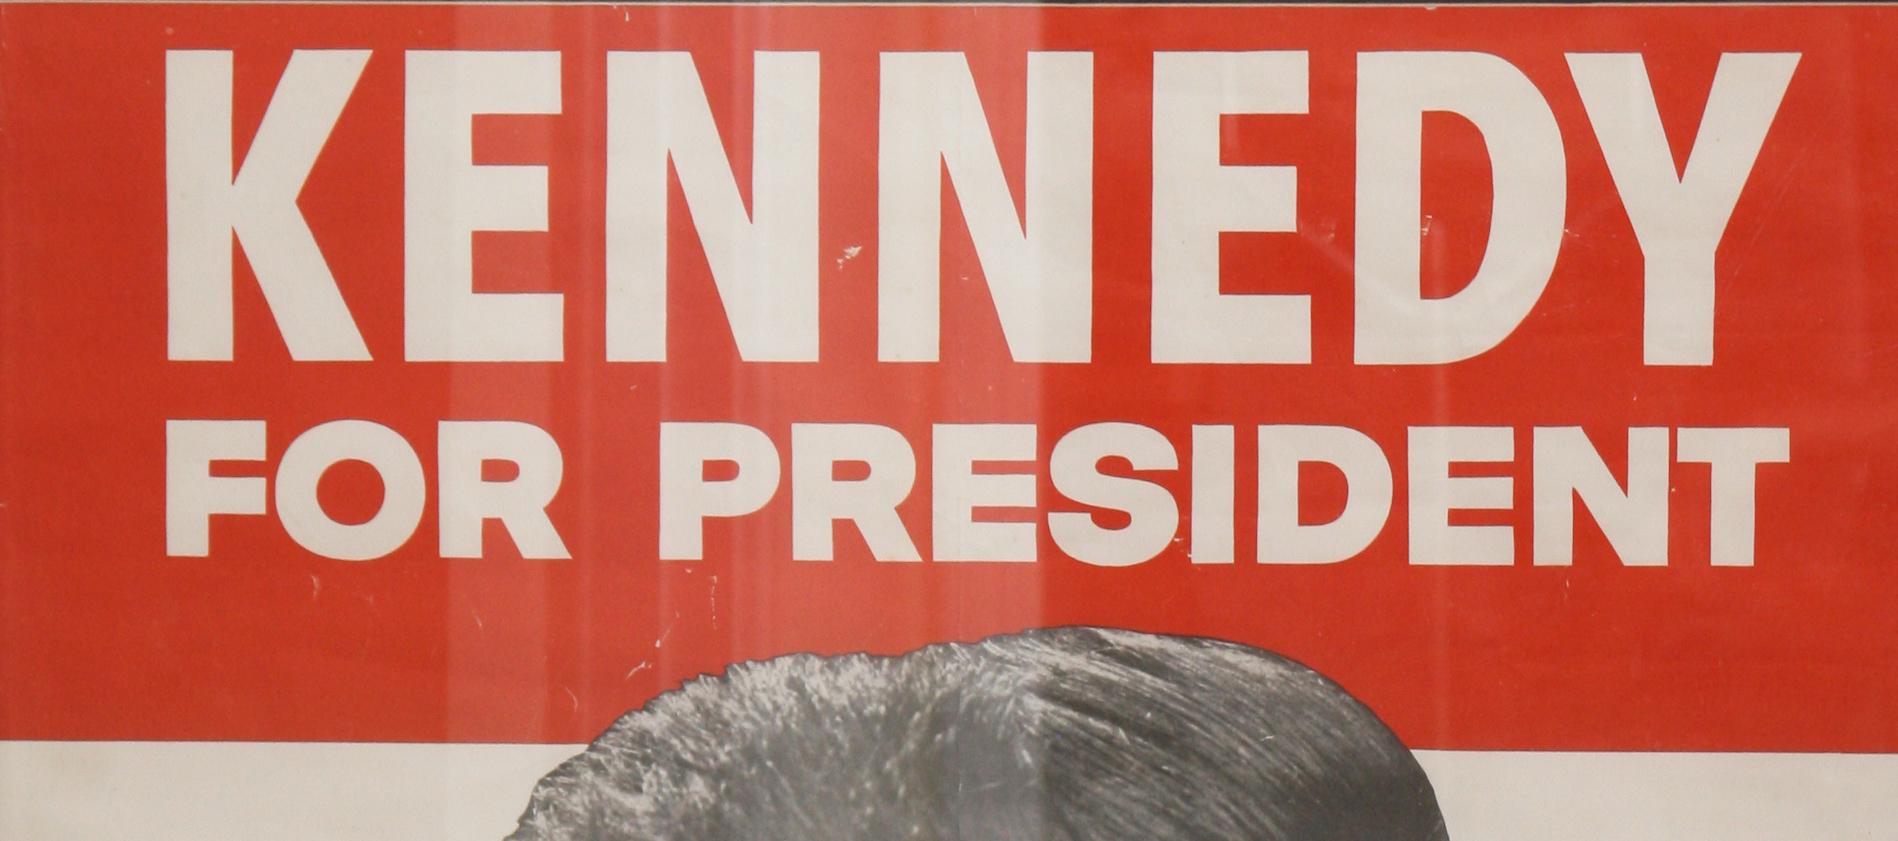 kennedy for president poster original